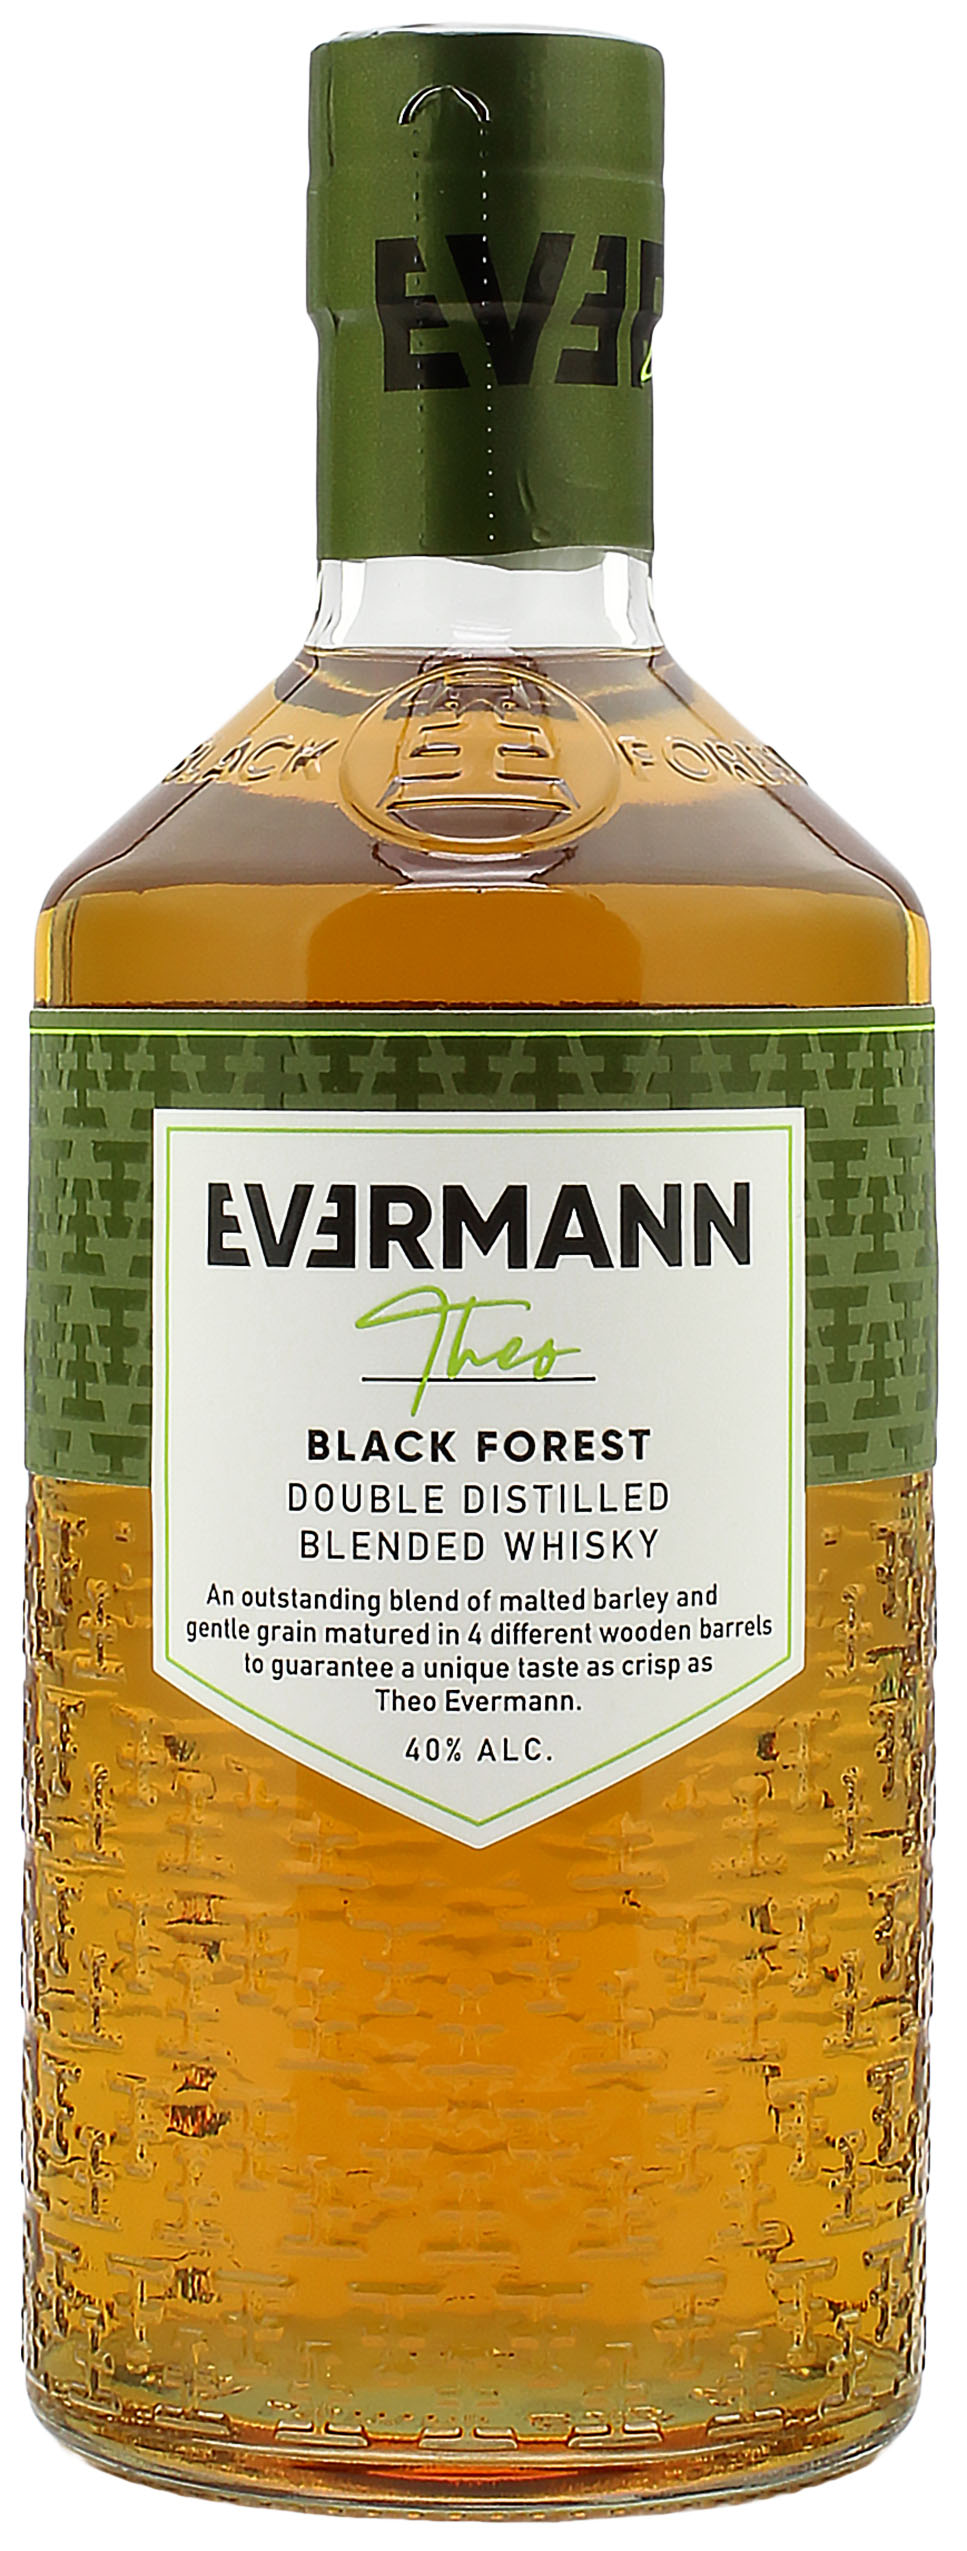 Forest Whisky Black Blended Evermann Theo